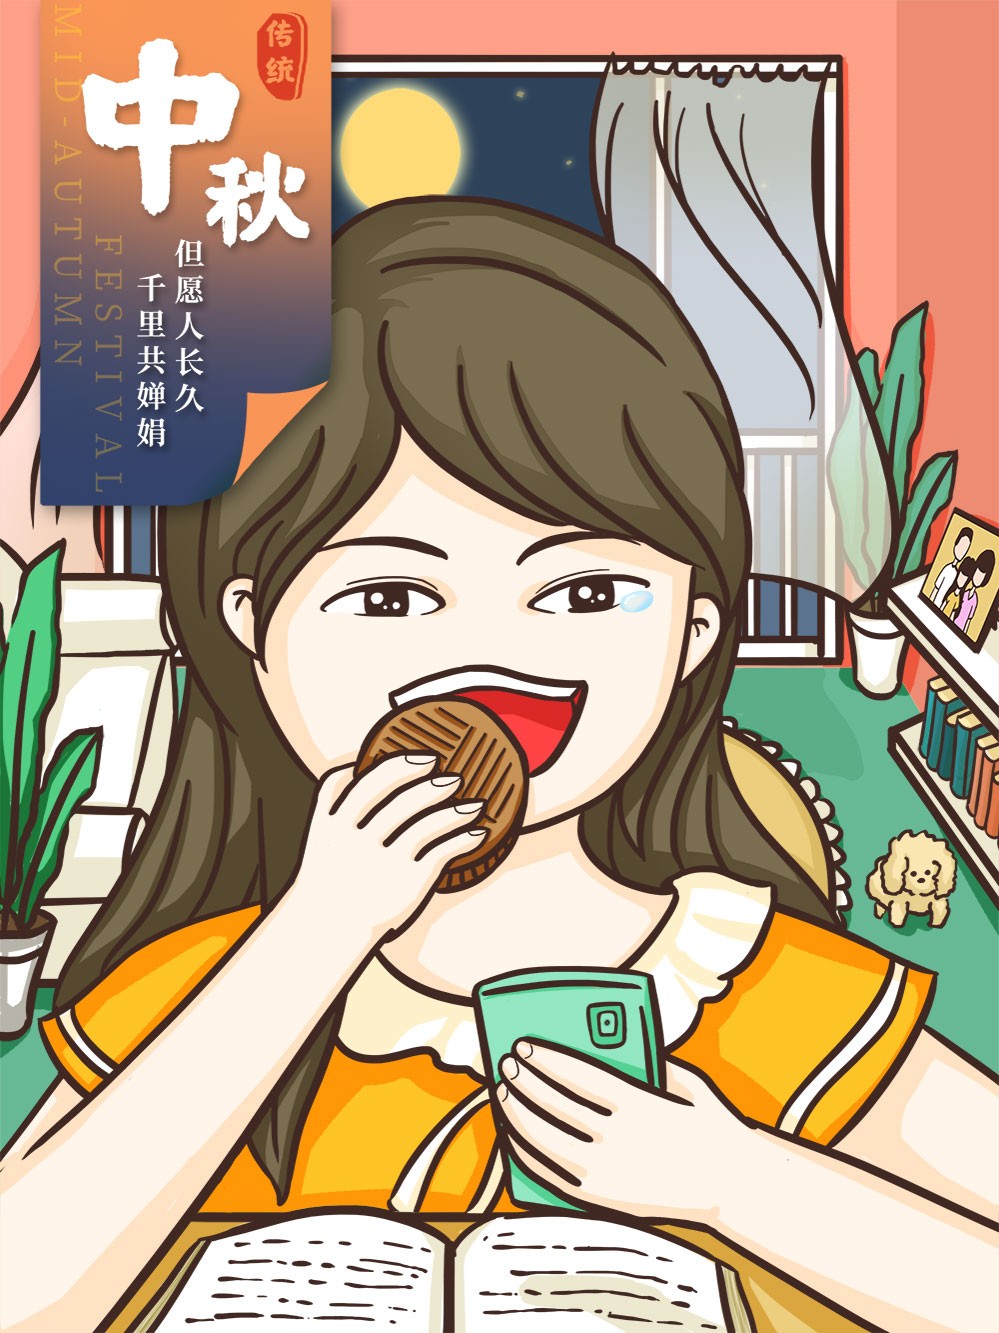 中秋节卡通女孩吃月饼海报